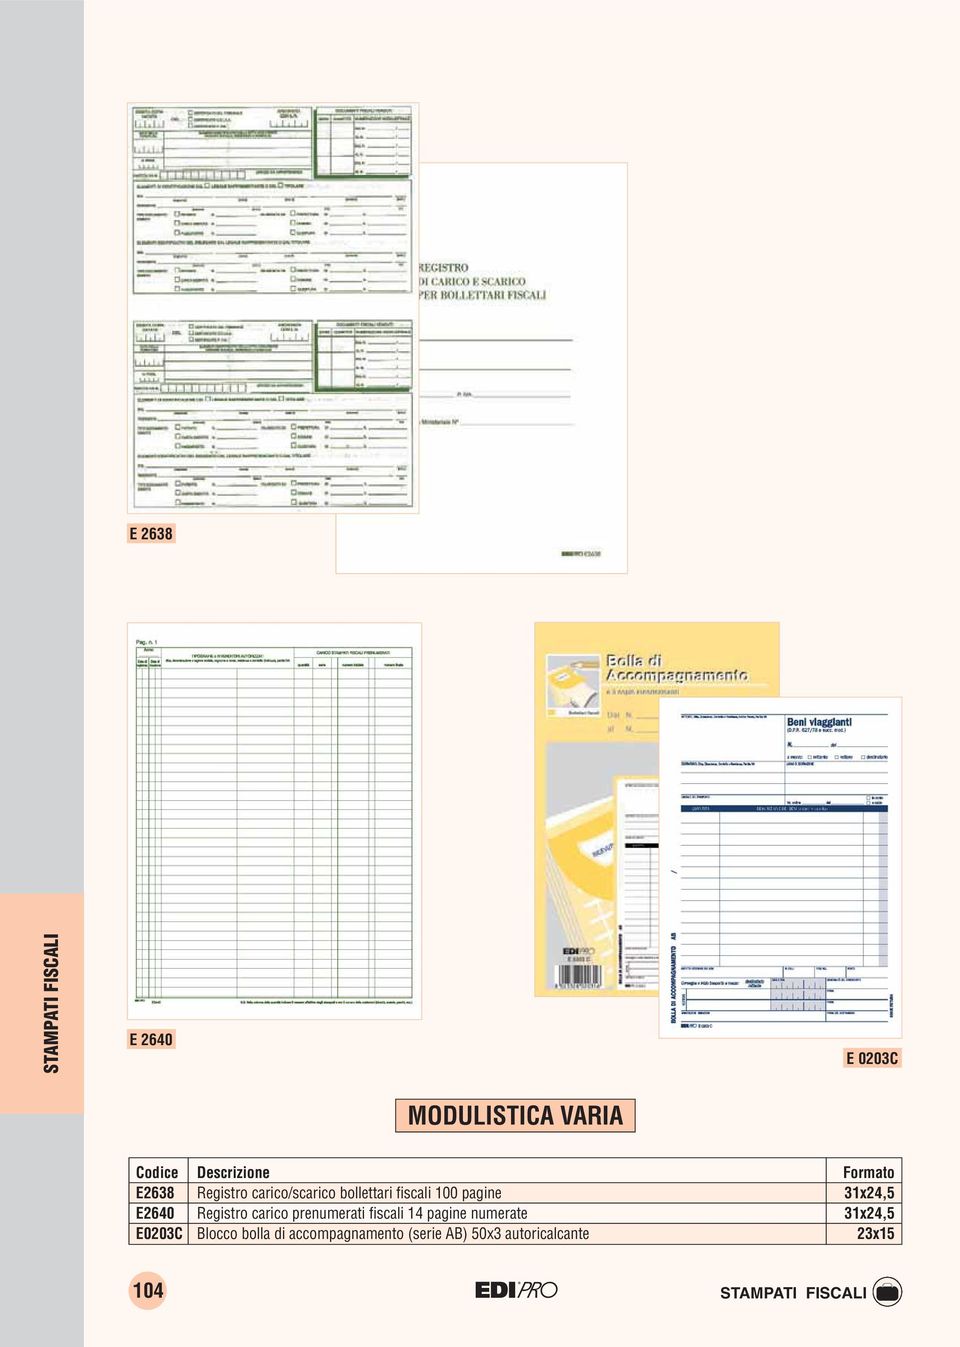 Registro carico prenumerati fiscali 14 pagine numerate 31x24,5 E0203C